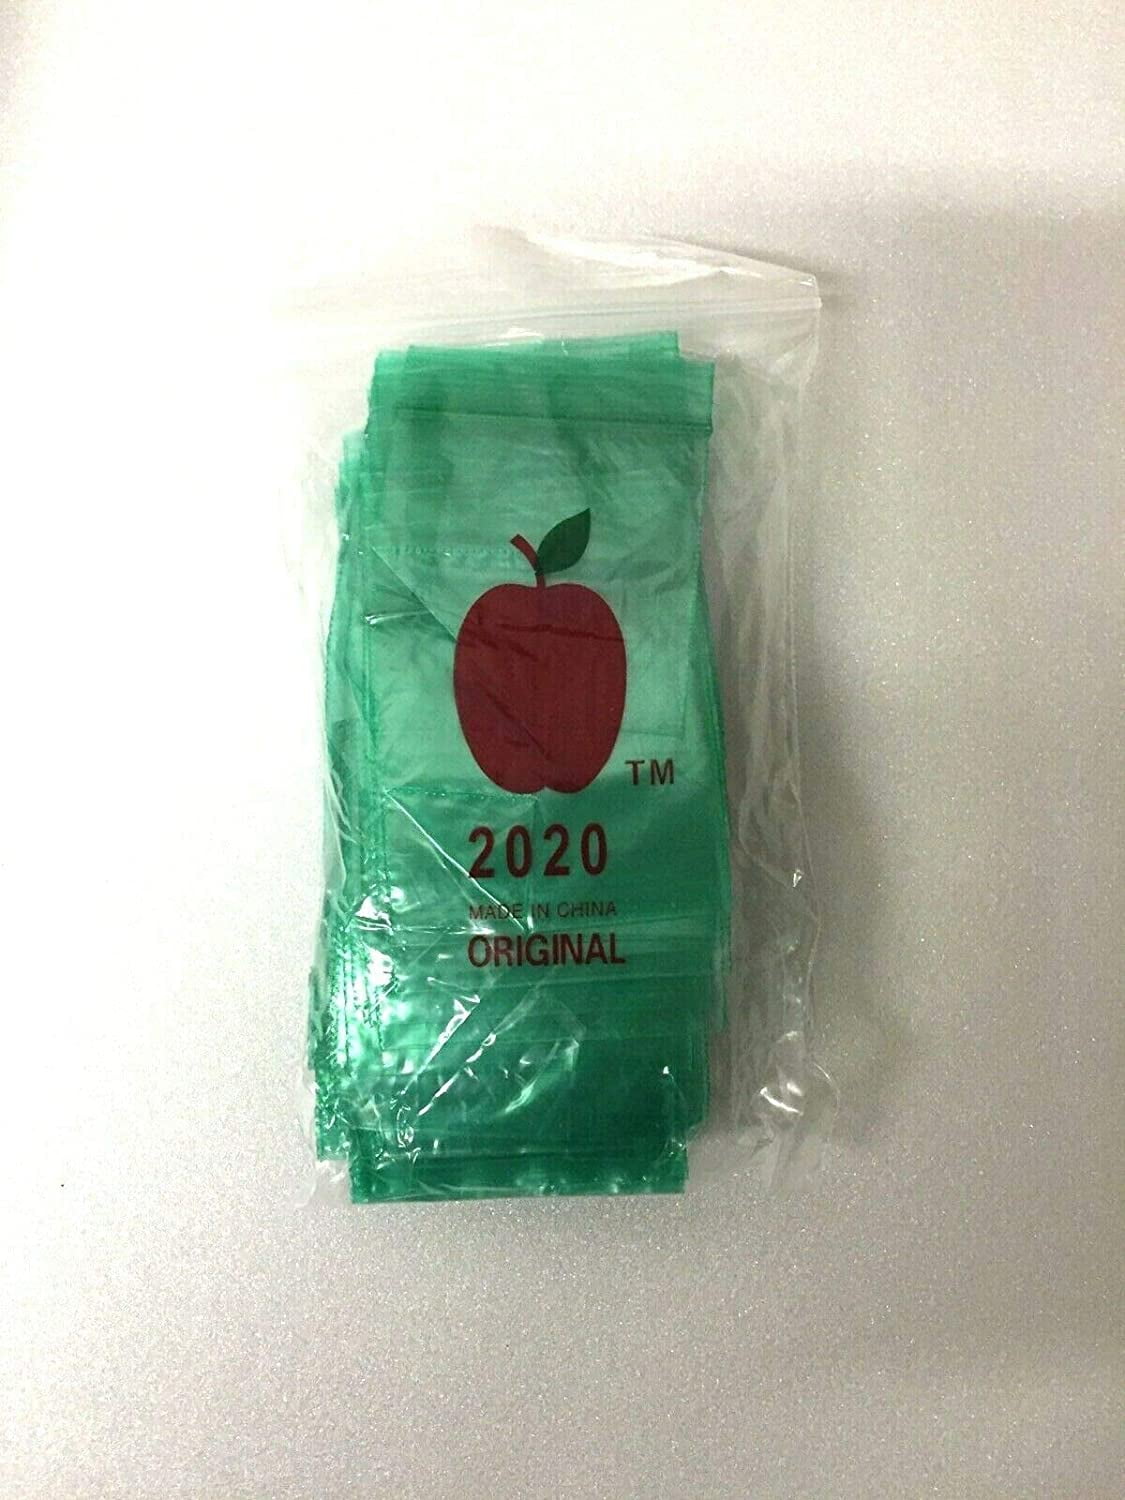 100 Apple Baggies Green Aliens 2 x 2 in ziplock bags 2020 reclosable 